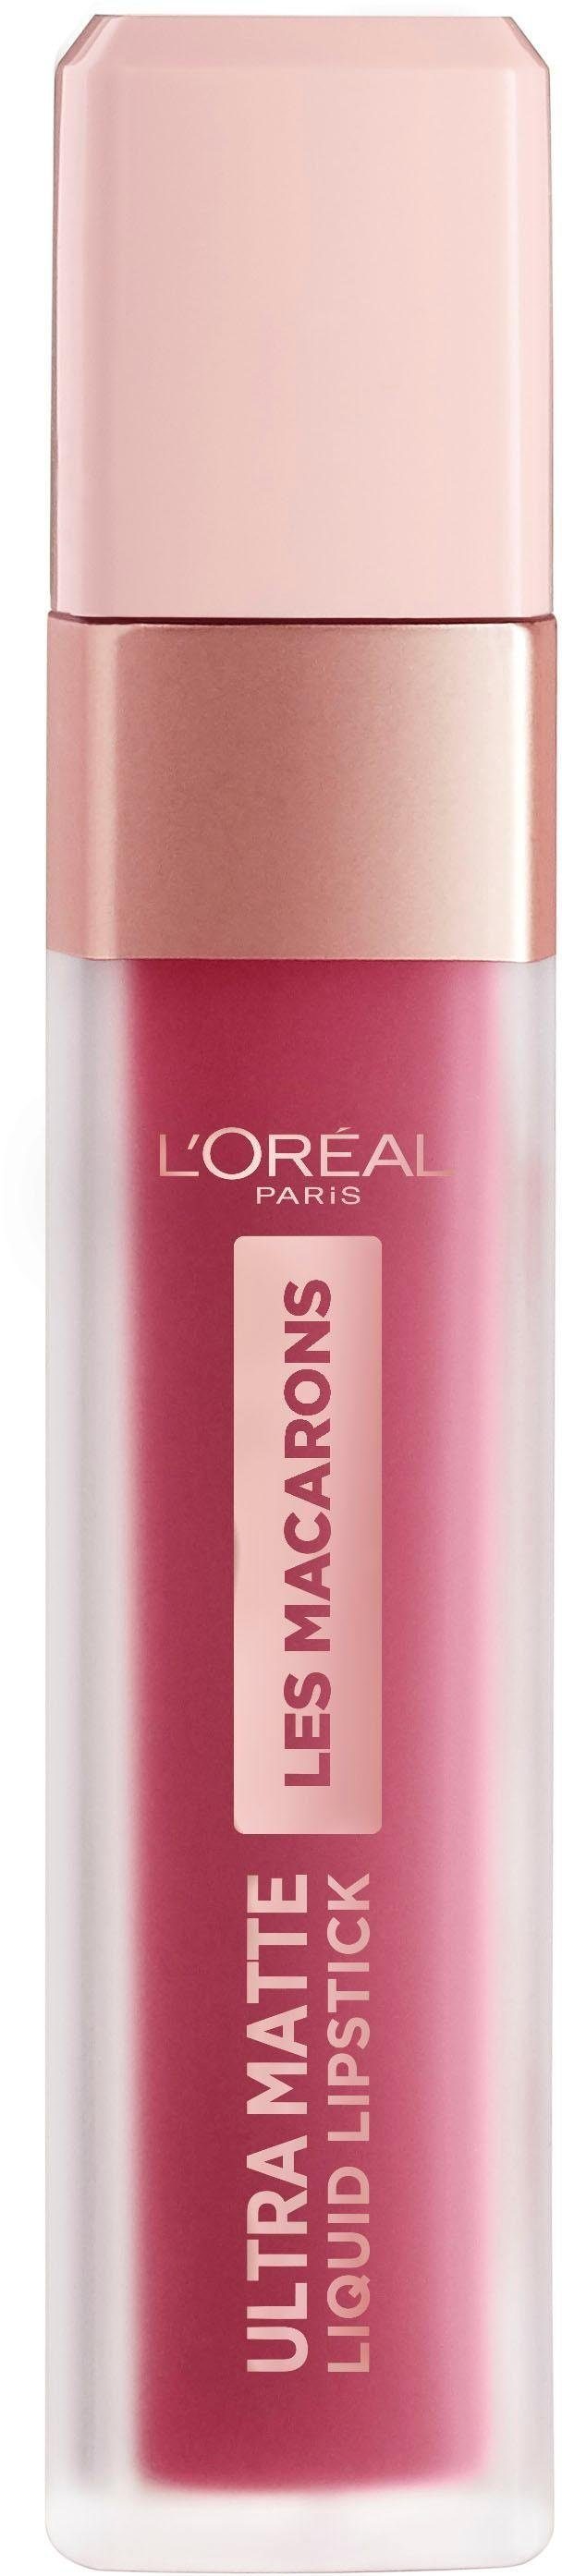 Infaillible Praline de Lippenstift Ultra-Matte Les Paris L'ORÉAL PARIS 820 Macarons